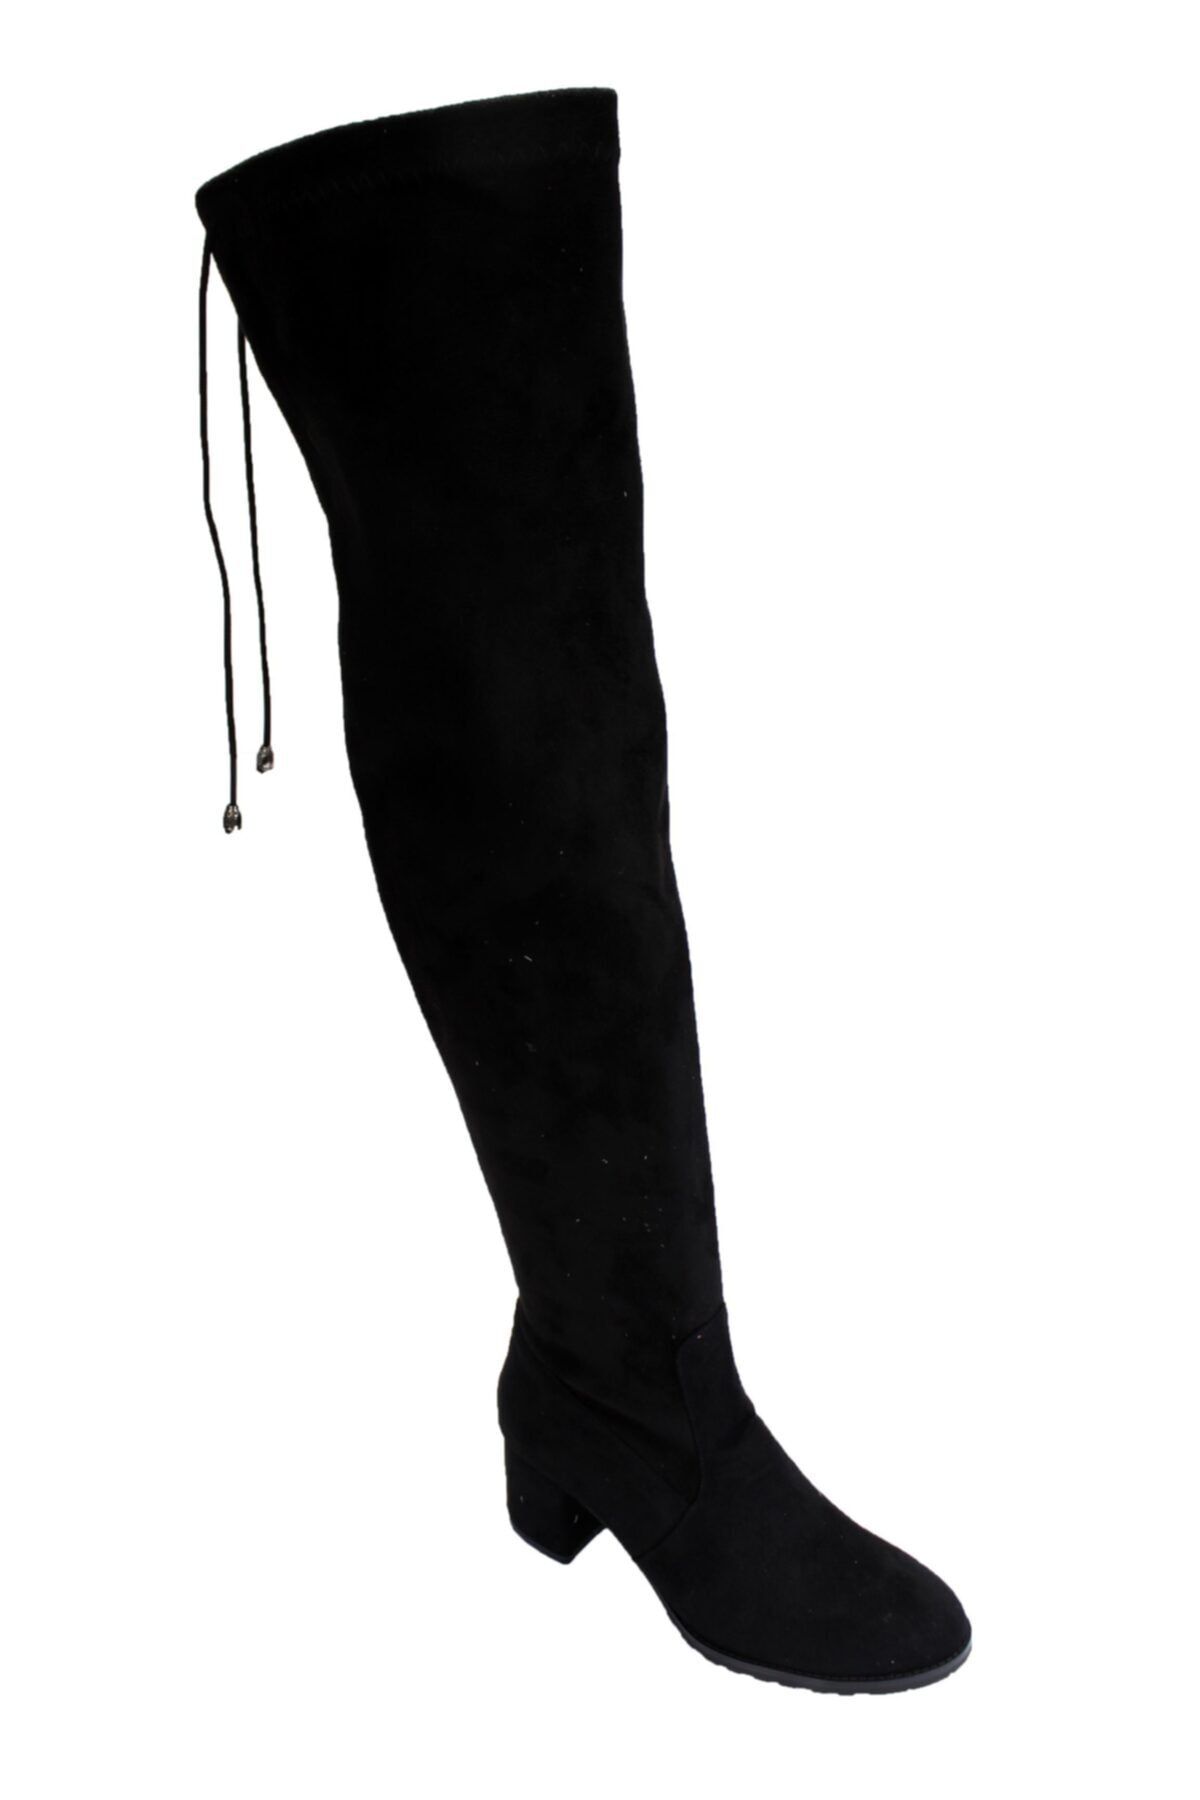 FELES Kadın Siyah Süet 6cm Kalın Topuk Diz Üstü Uzun Streç Çorap Çizme